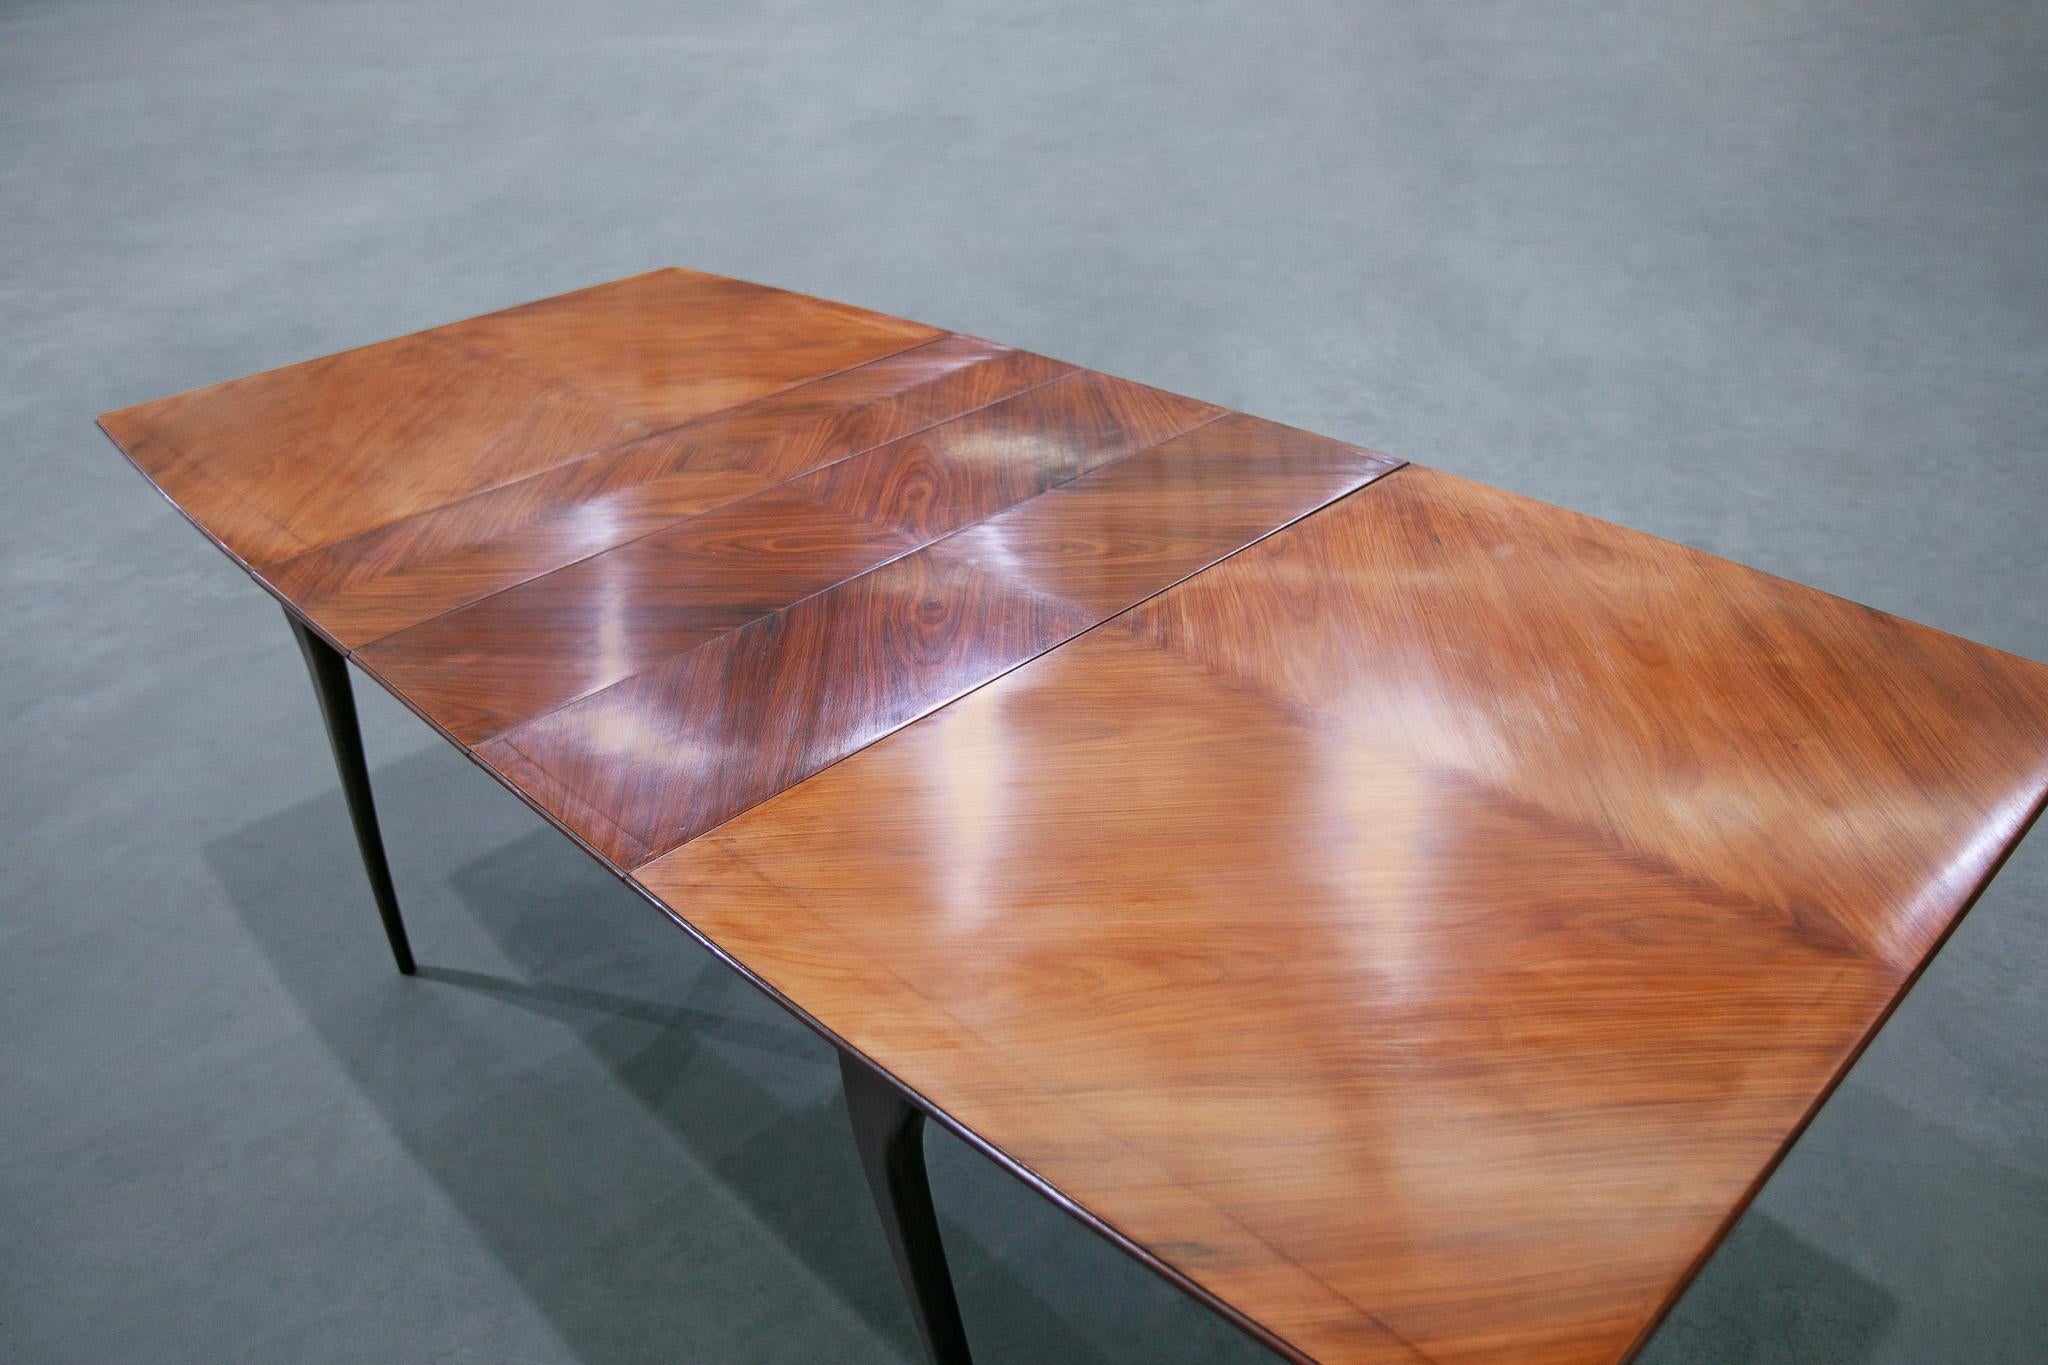 Disponible dès aujourd'hui, cette table de salle à manger moderne brésilienne en bois dur Caviuna est un meuble magnifique !

Cette table a été fabriquée au Brésil en bois dur Caviana. Elle présente de nombreuses caractéristiques de ce à quoi